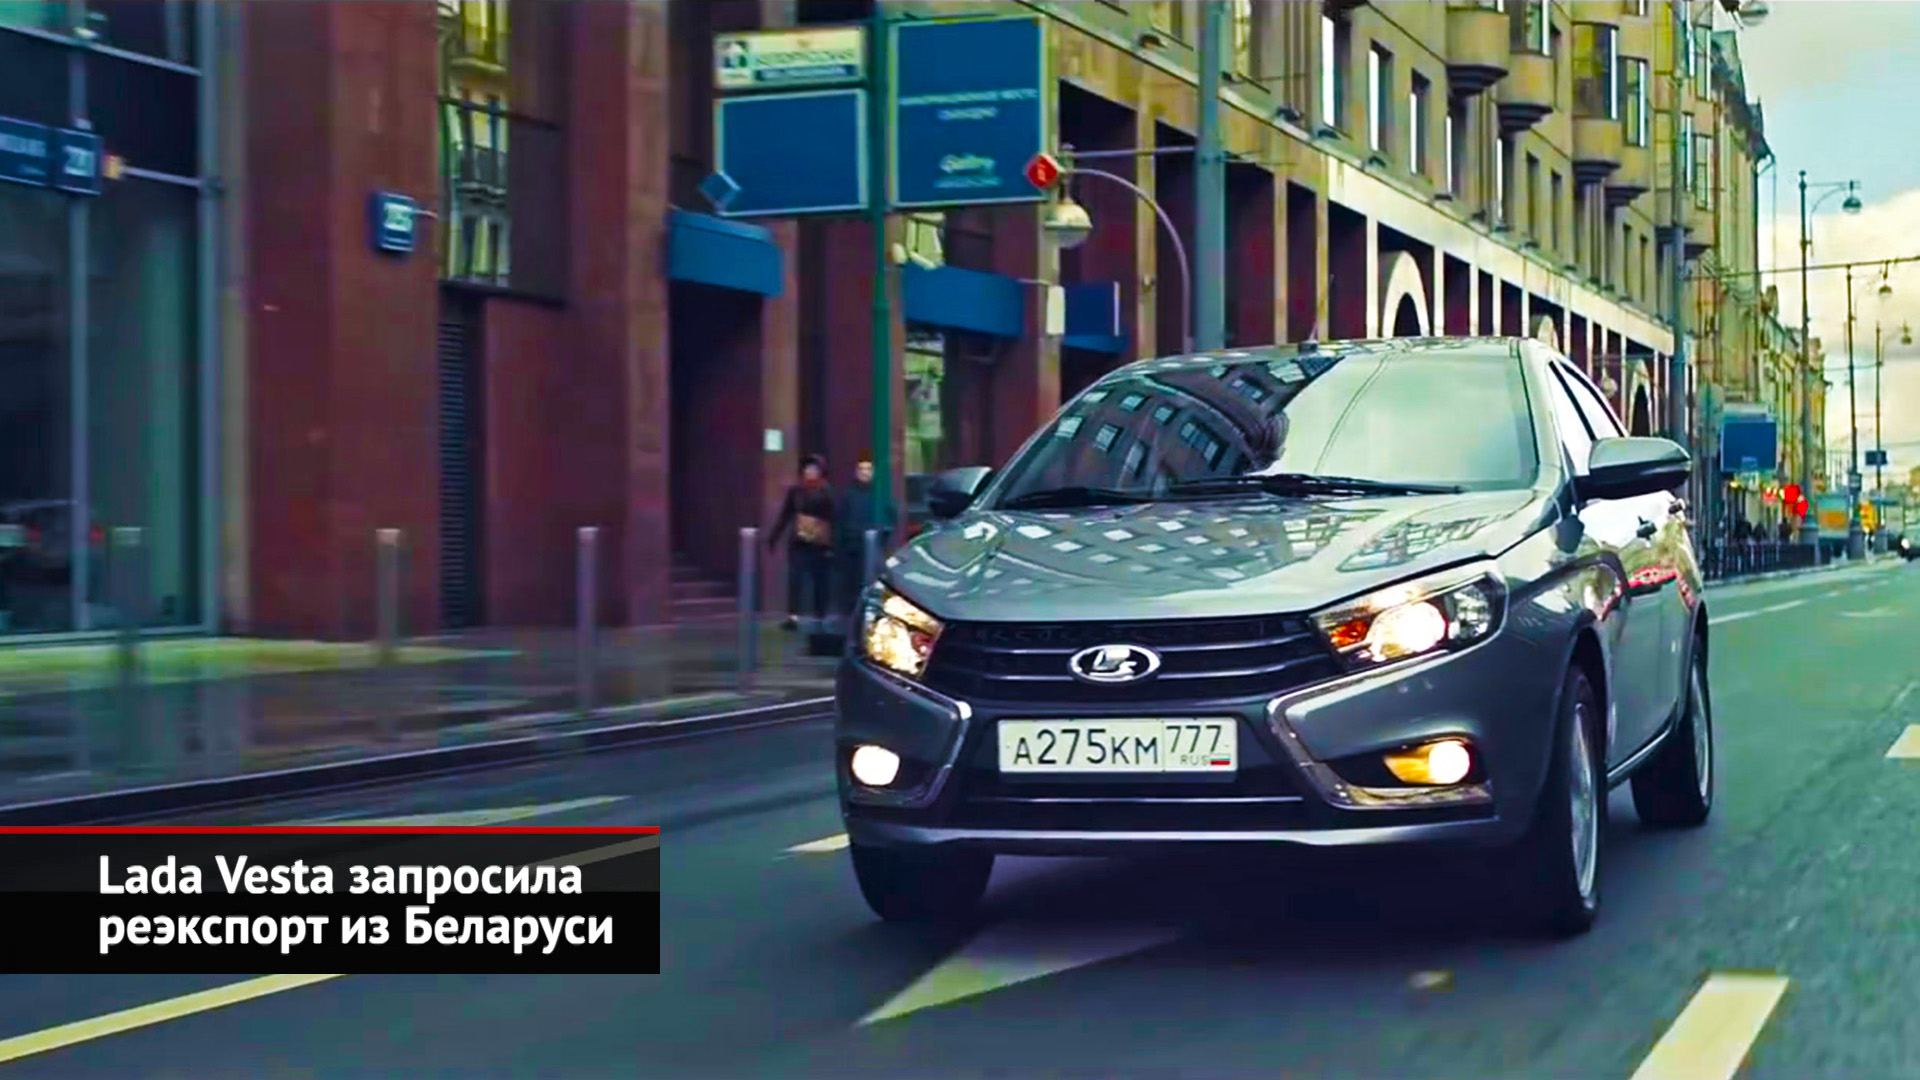 Lada Vesta запросила реэкспорт из Беларуси. Lada Niva Sport готовится к производству | Новости №2259